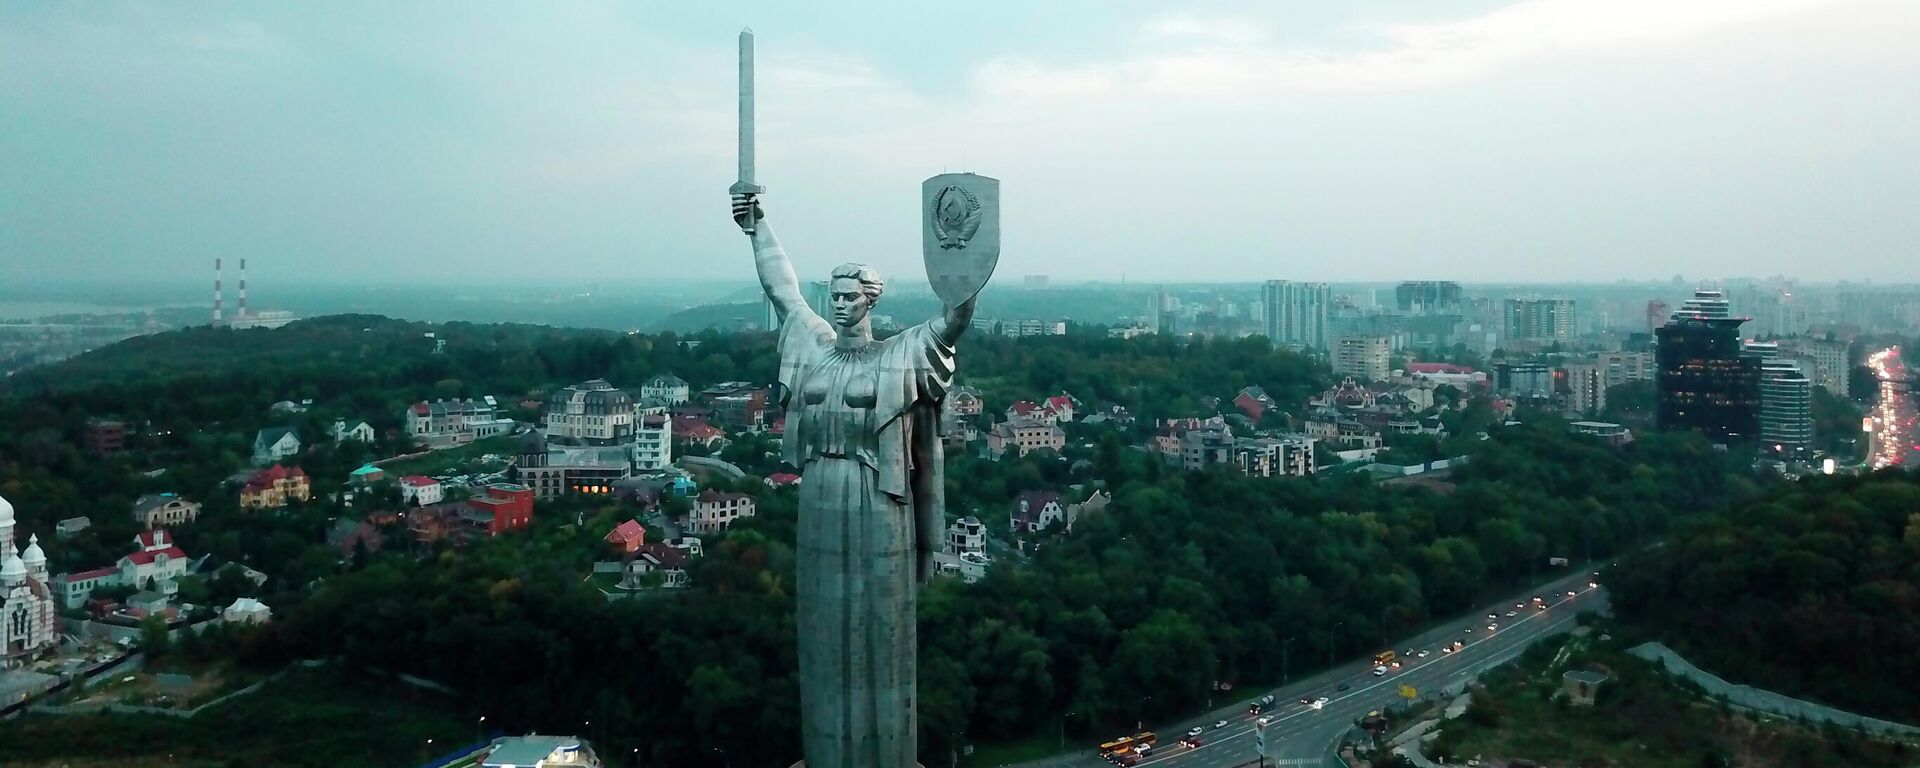 Монумент Родина-мать в Киеве - Sputnik Узбекистан, 1920, 30.09.2021